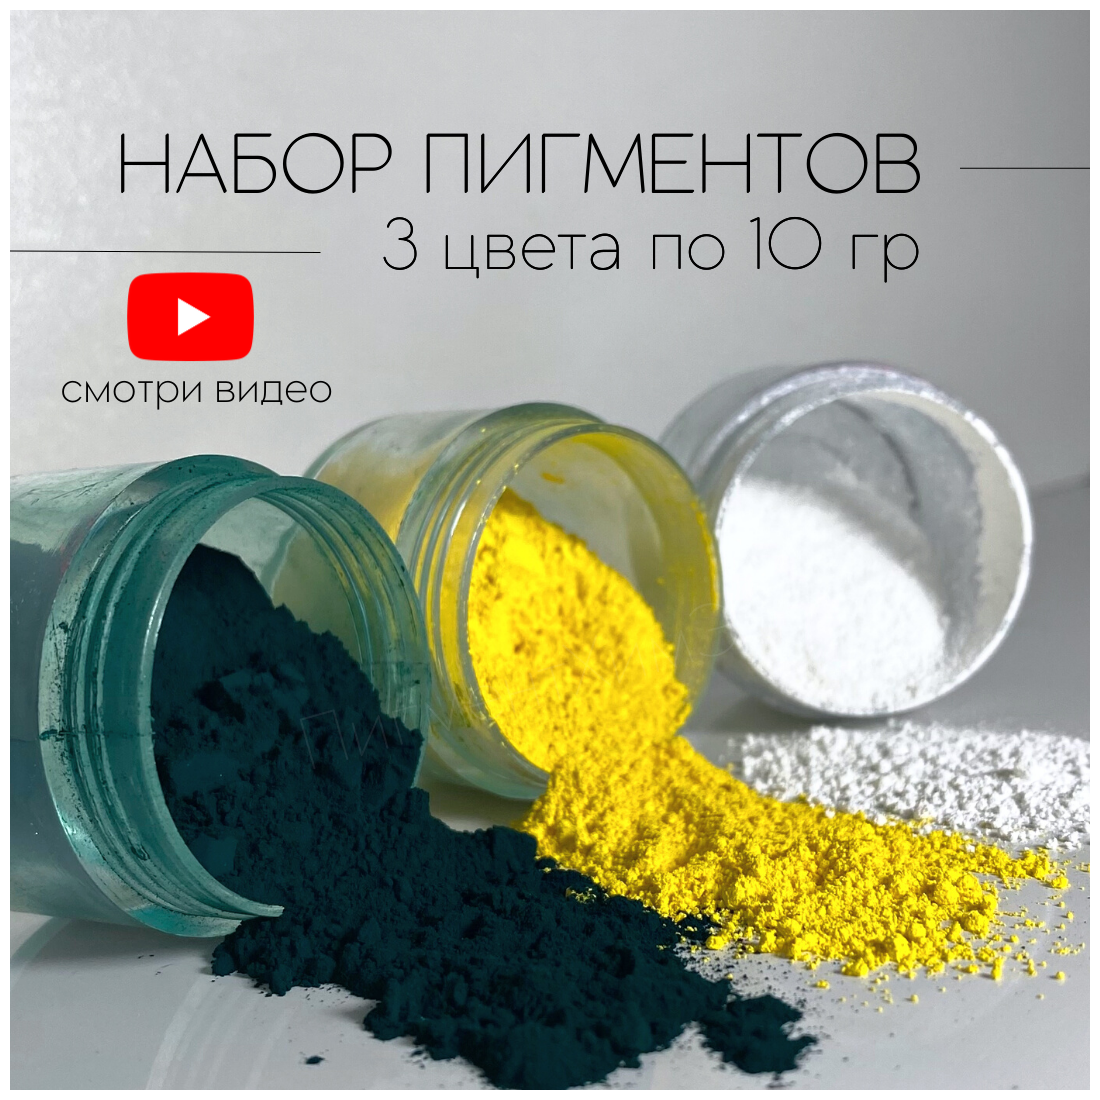 Набор пигментов 3 цвета по 10 гр (белый, изумрудный, лимонный) железооксидных для ЛКМ, бетона, гипса, эпоксидной смолы - фотография № 1